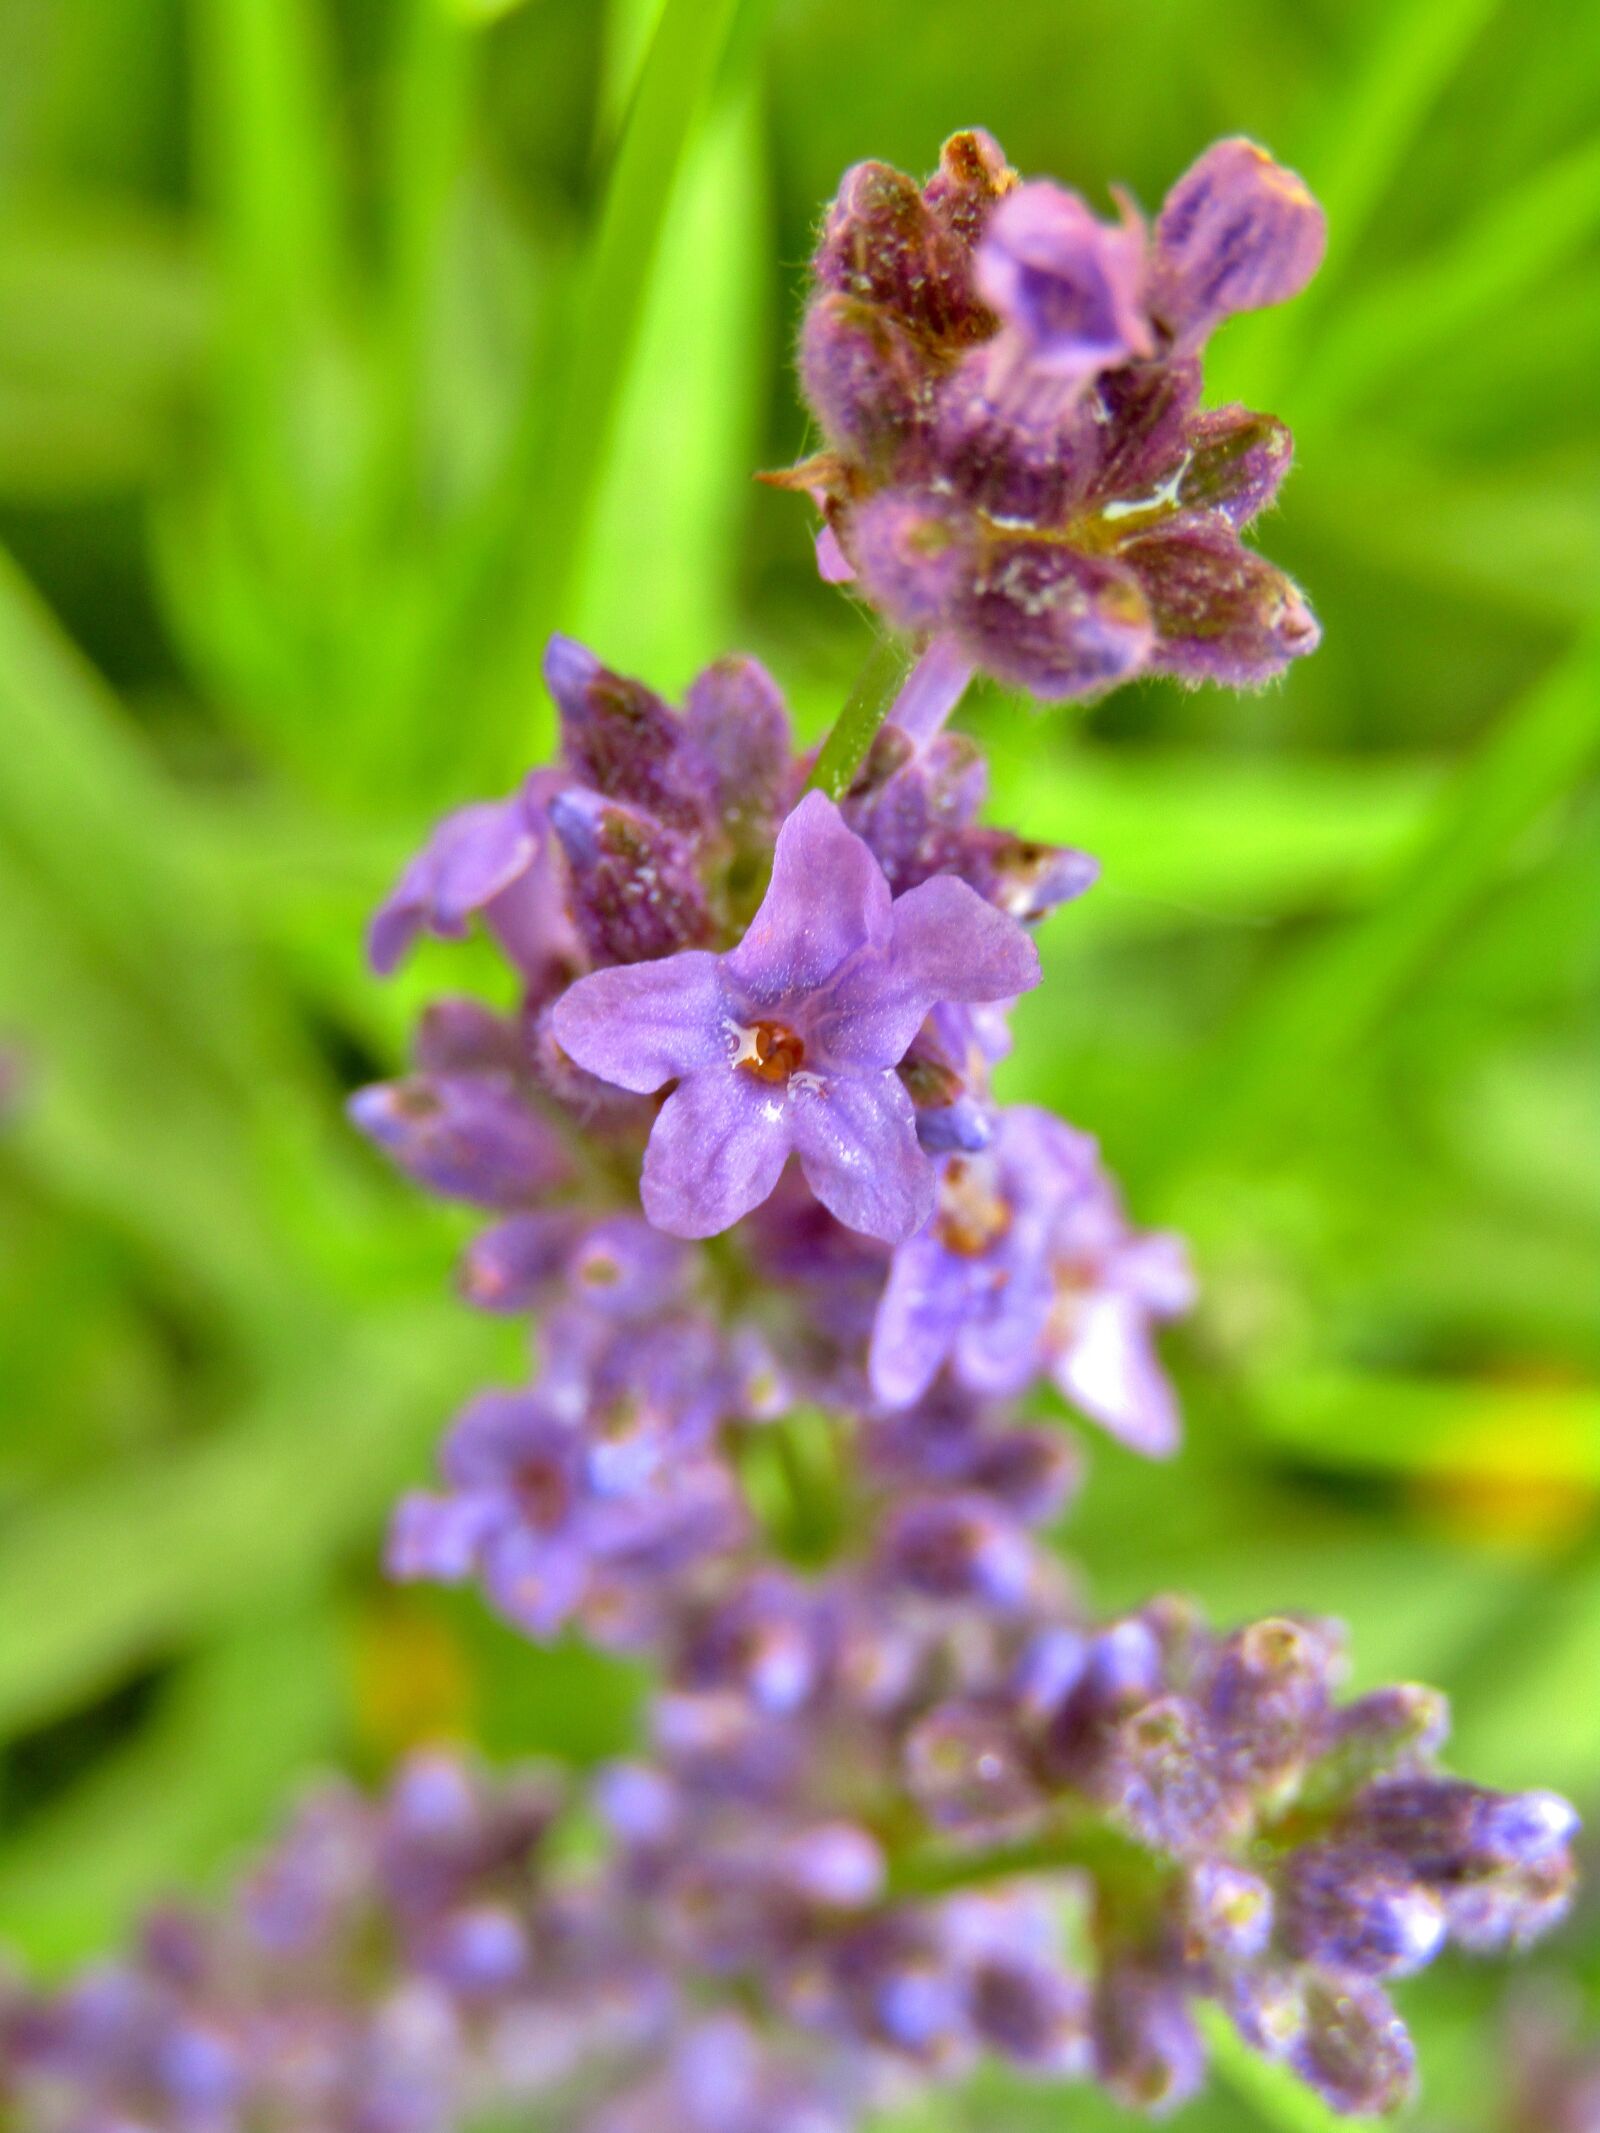 Canon POWERSHOT SX432 IS sample photo. Lavender, lavender bush, purple photography